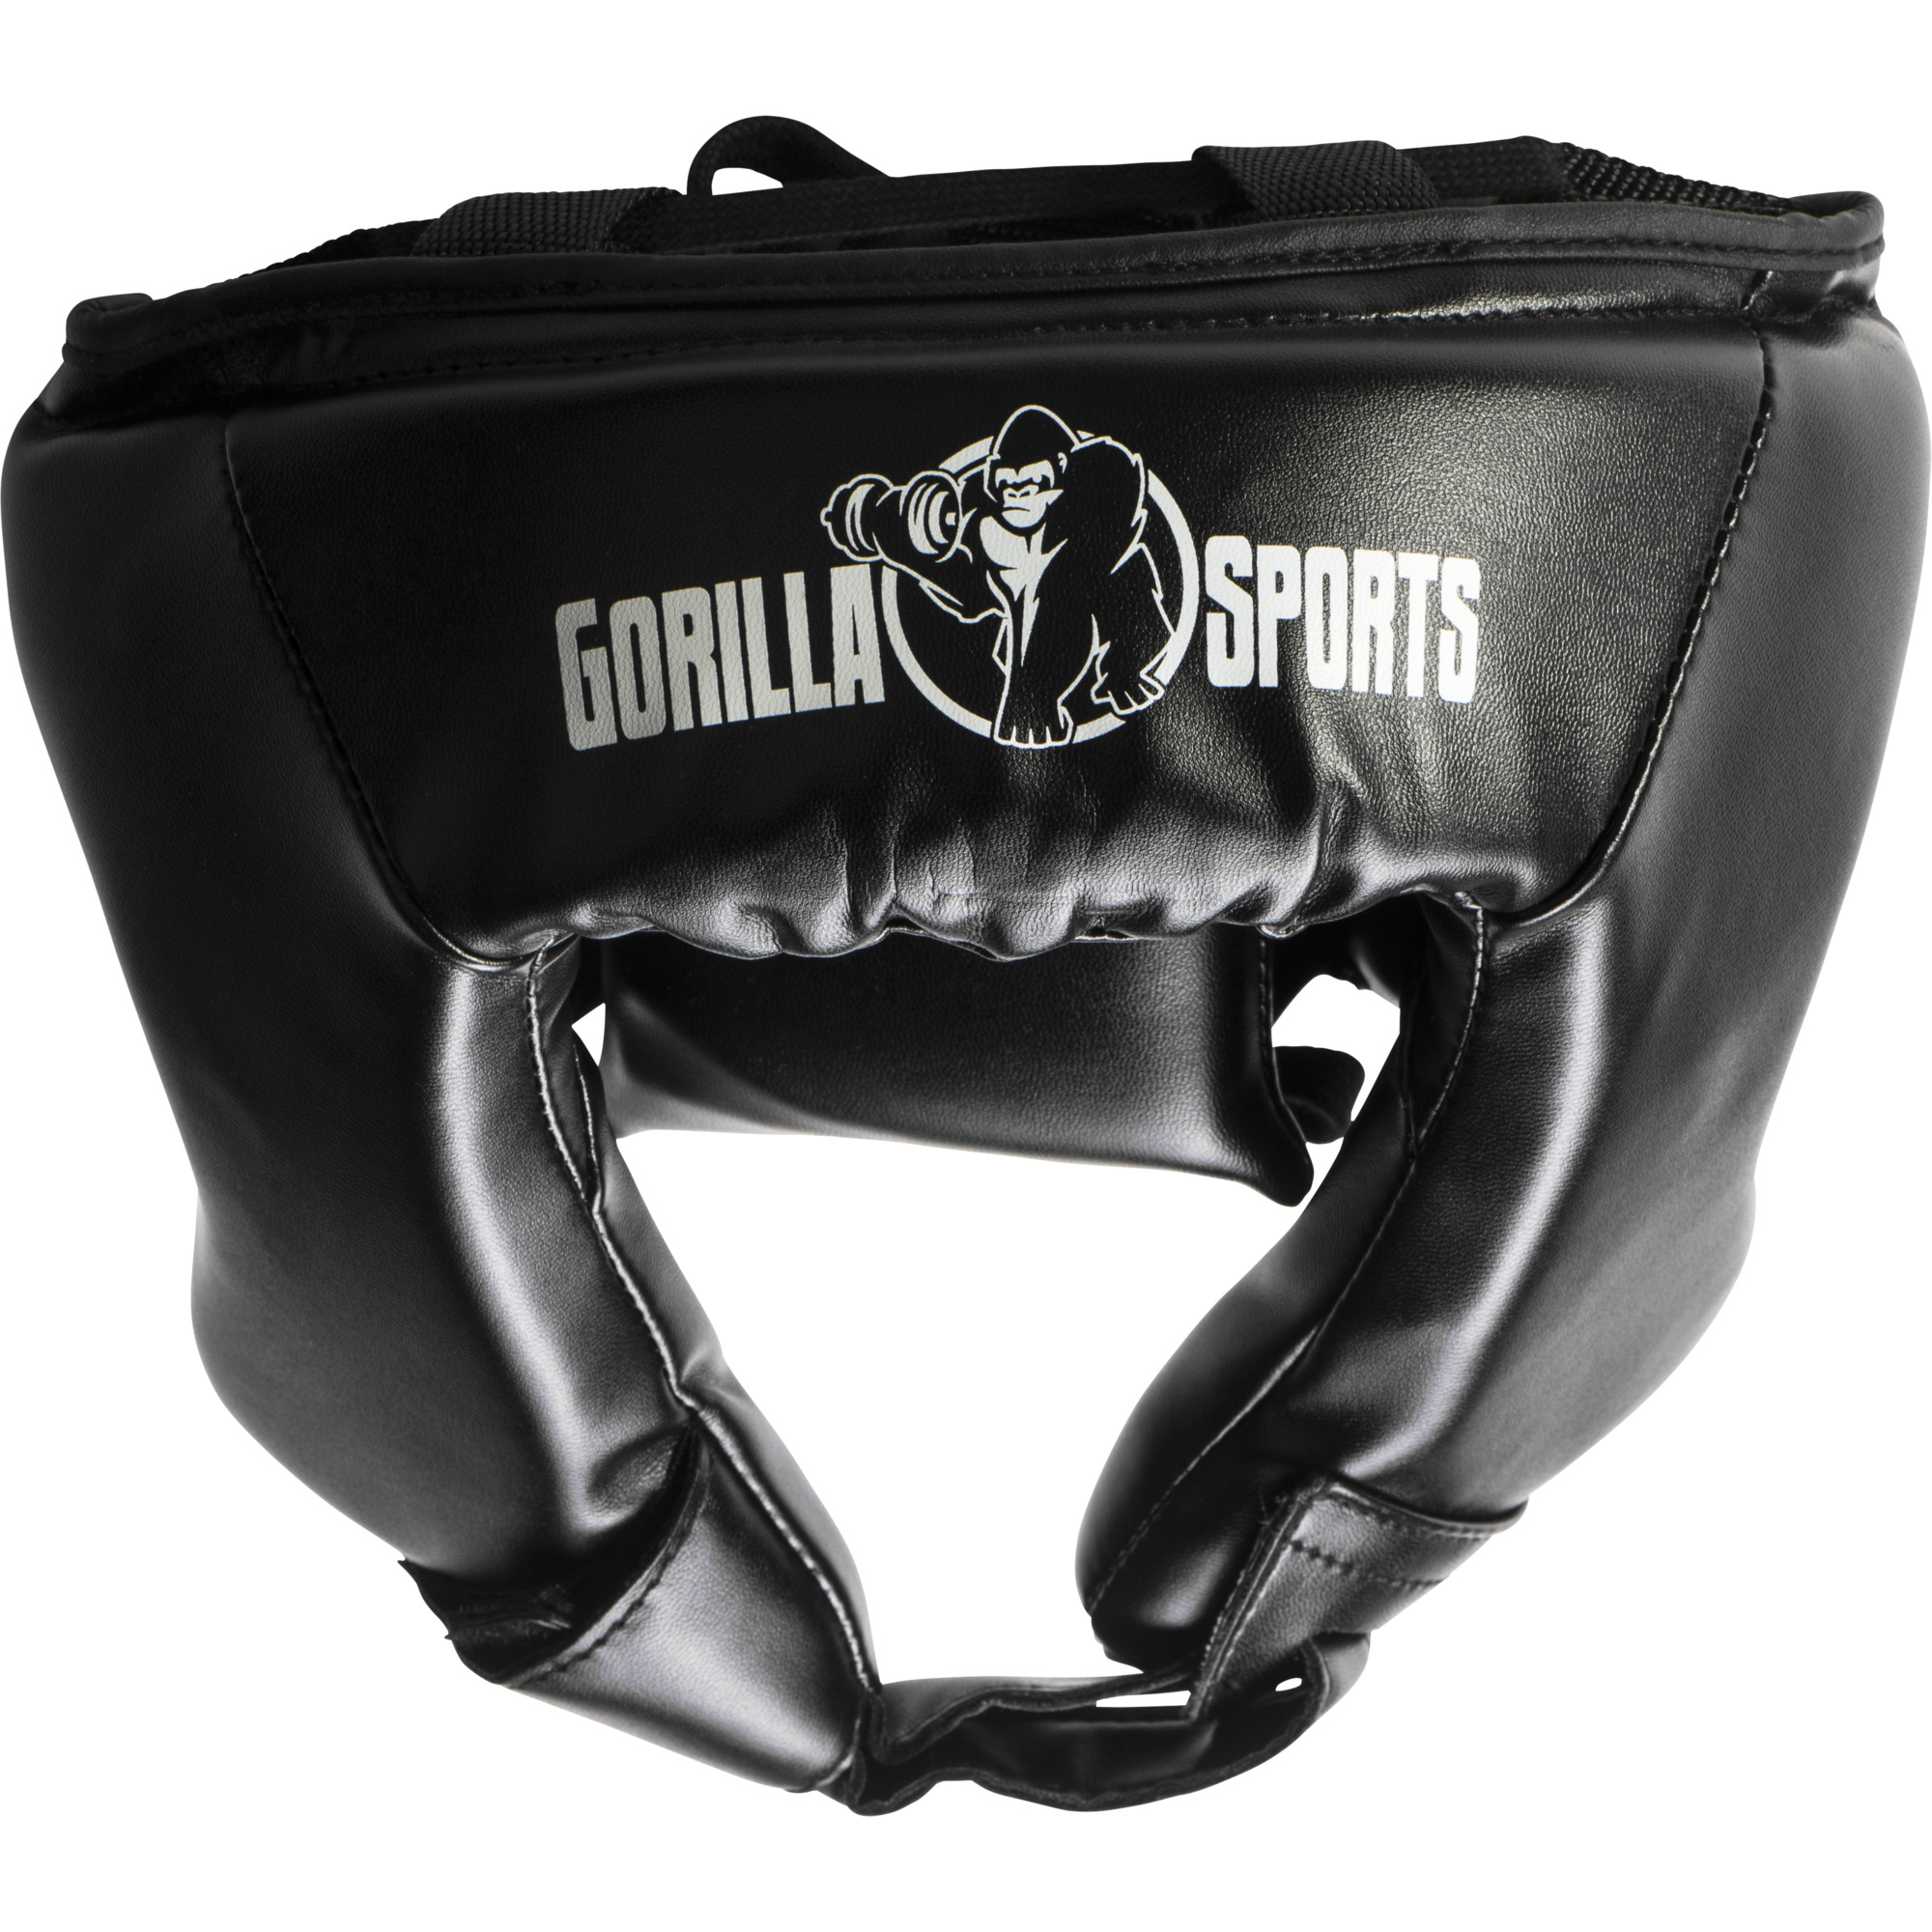 Casque de protection pour sports de combat Gorilla Sports taille L